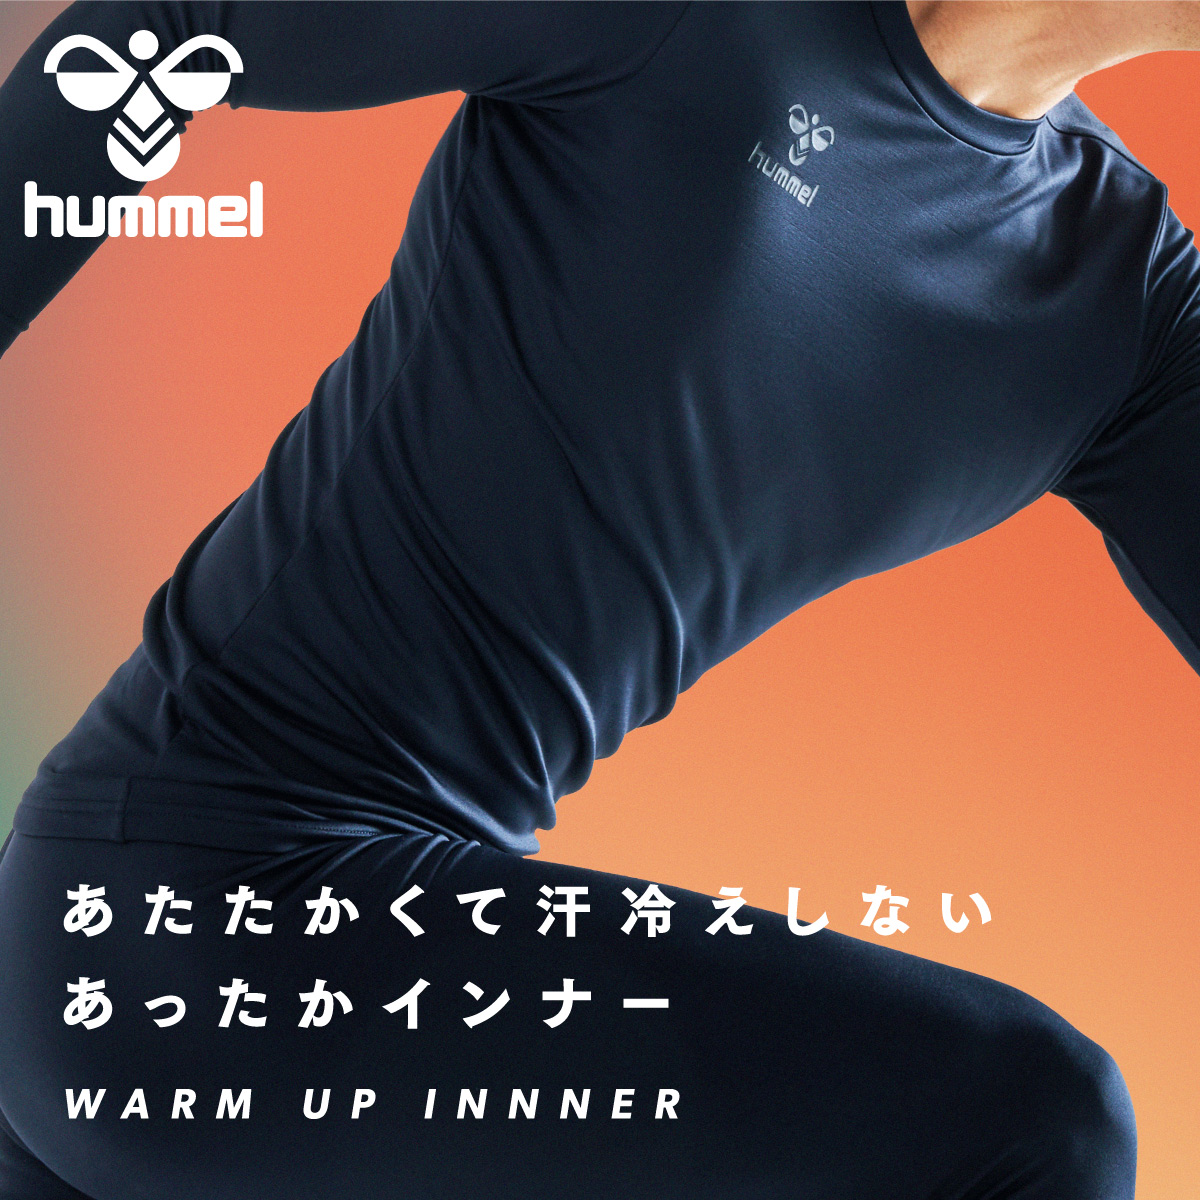 hummel 17FW ◆ ヒュンメル ジュニア インナーシャツ ◆ あったかインナーシャツ ◆ size : 150 ◆ ホワイト ◆ 017-HJP5145-10-150-001